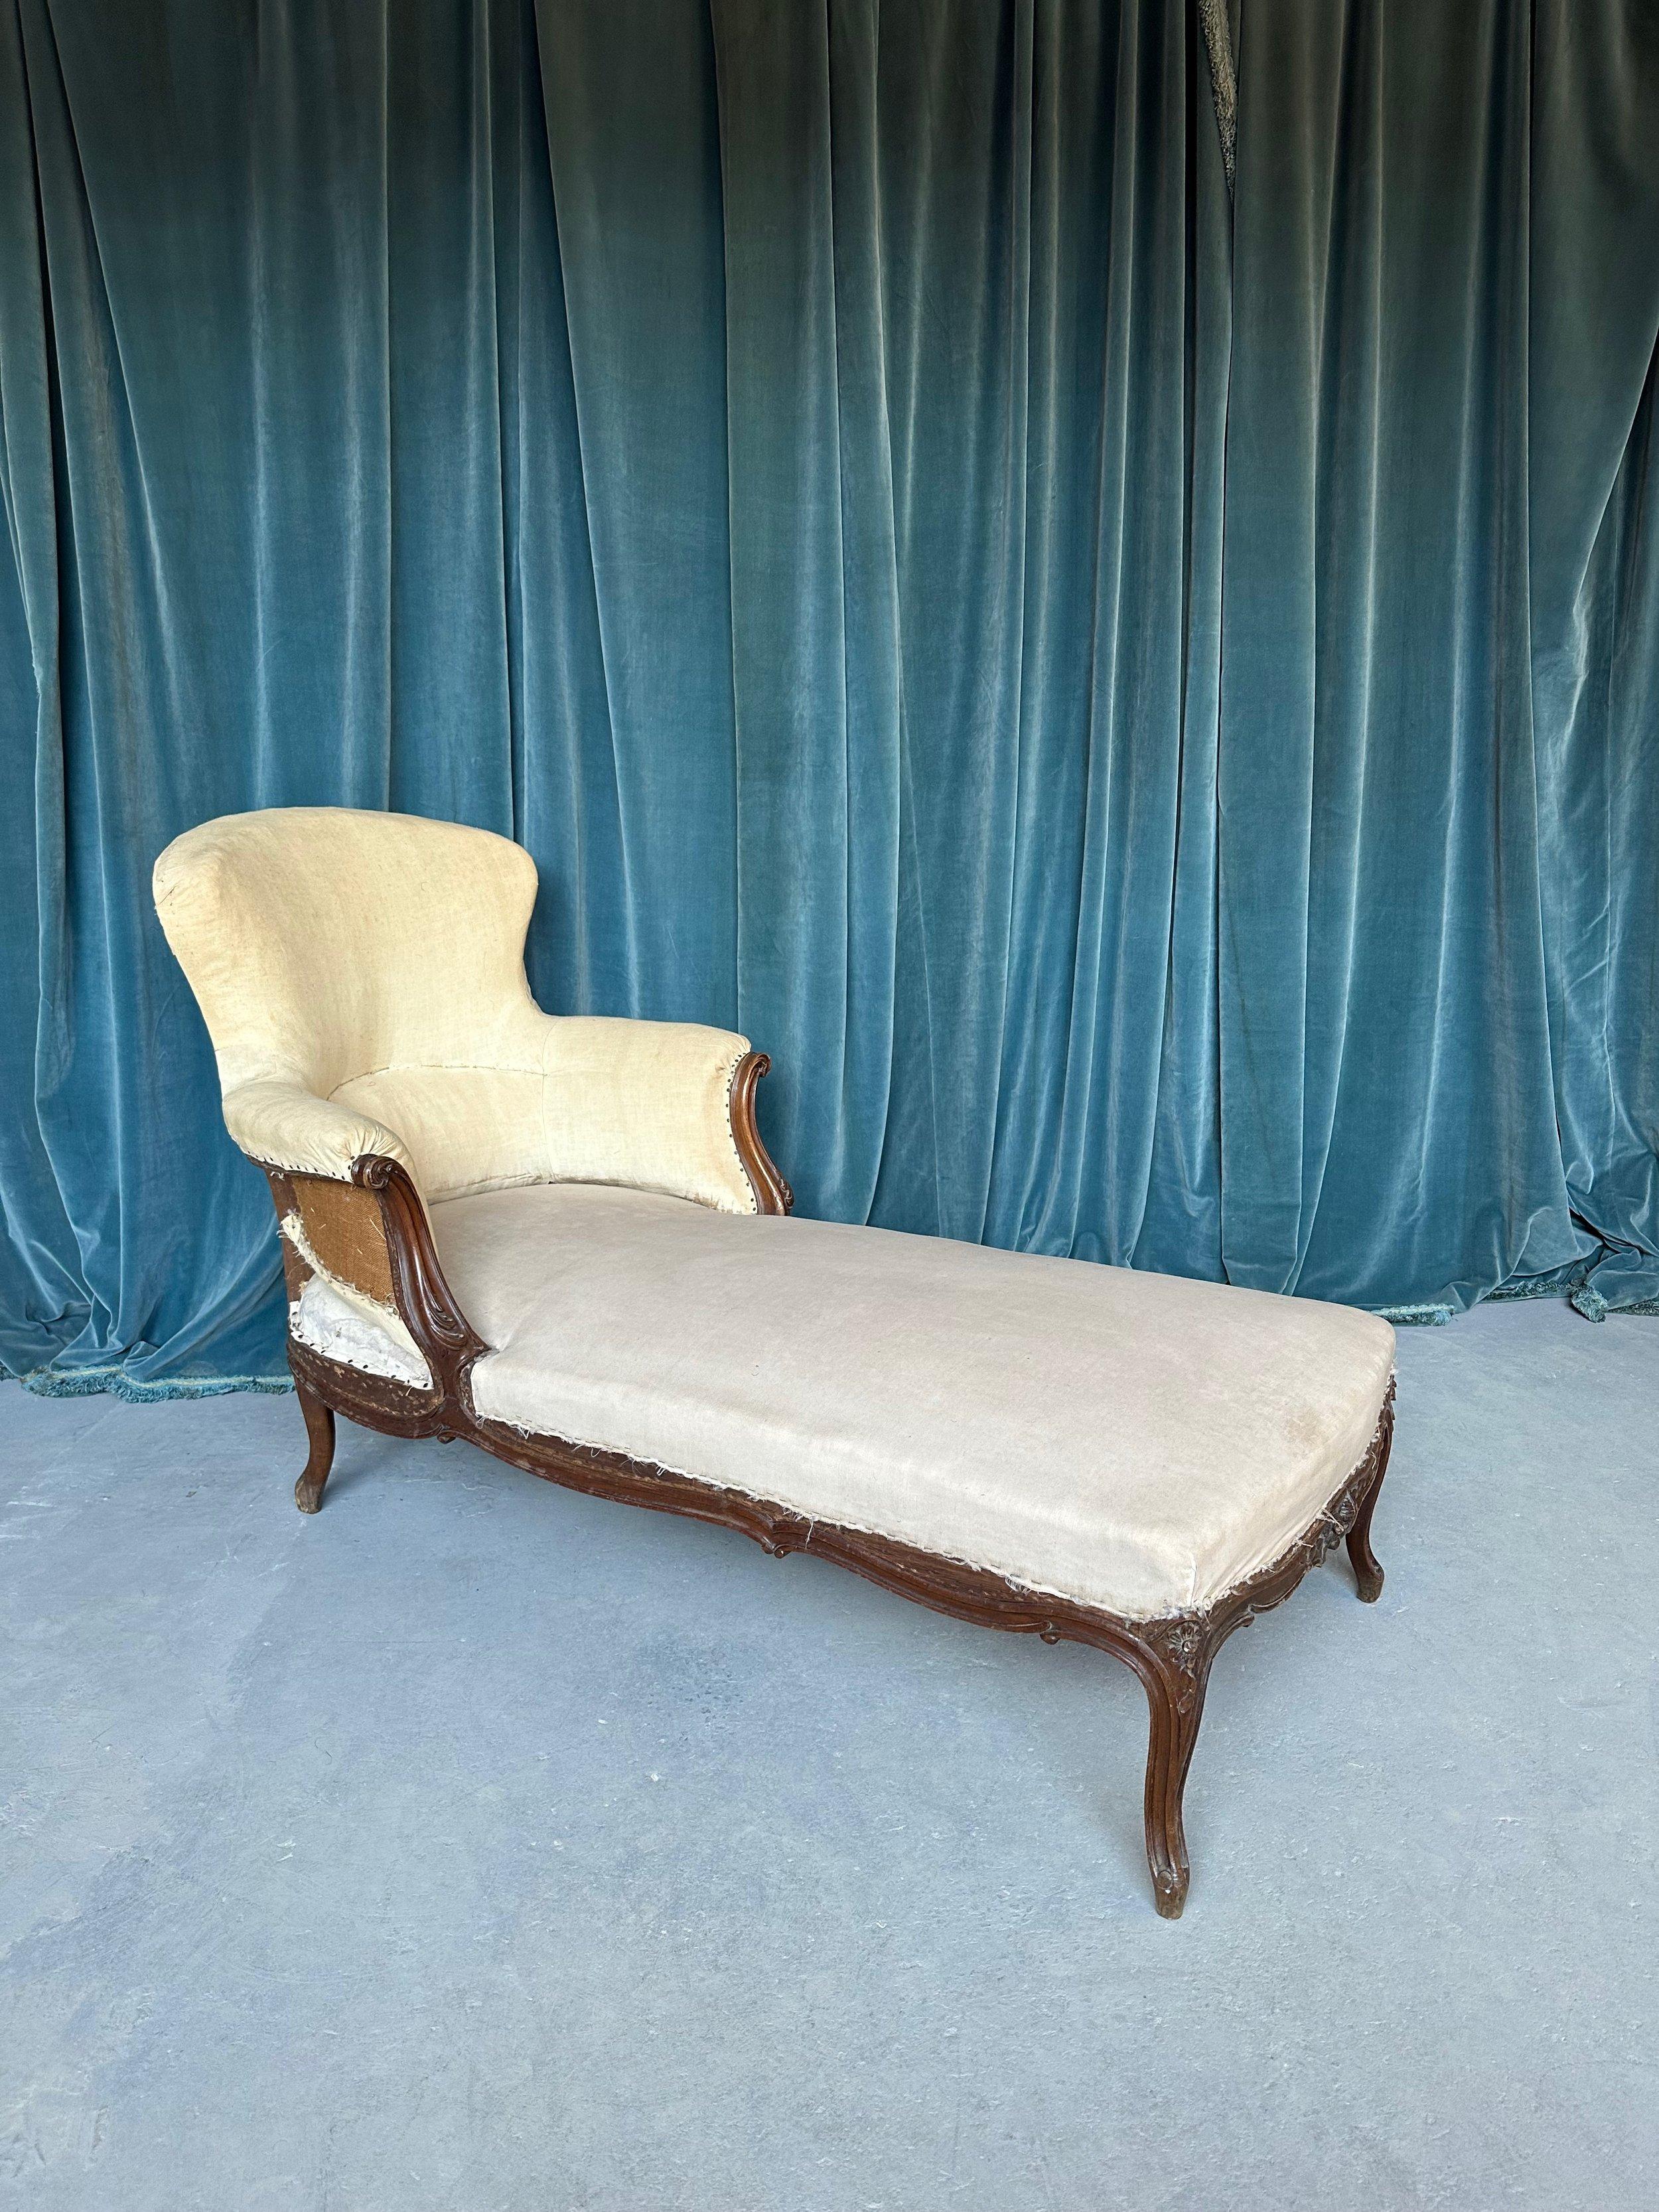 Cette élégante chaise longue française Napoléon III est classique et intemporelle. Inspirée de la période Louis XV, cette chaise du XIXe siècle présente un cadre en bois fruitier sculpté de manière élaborée. Elle constituera un ajout remarquable à